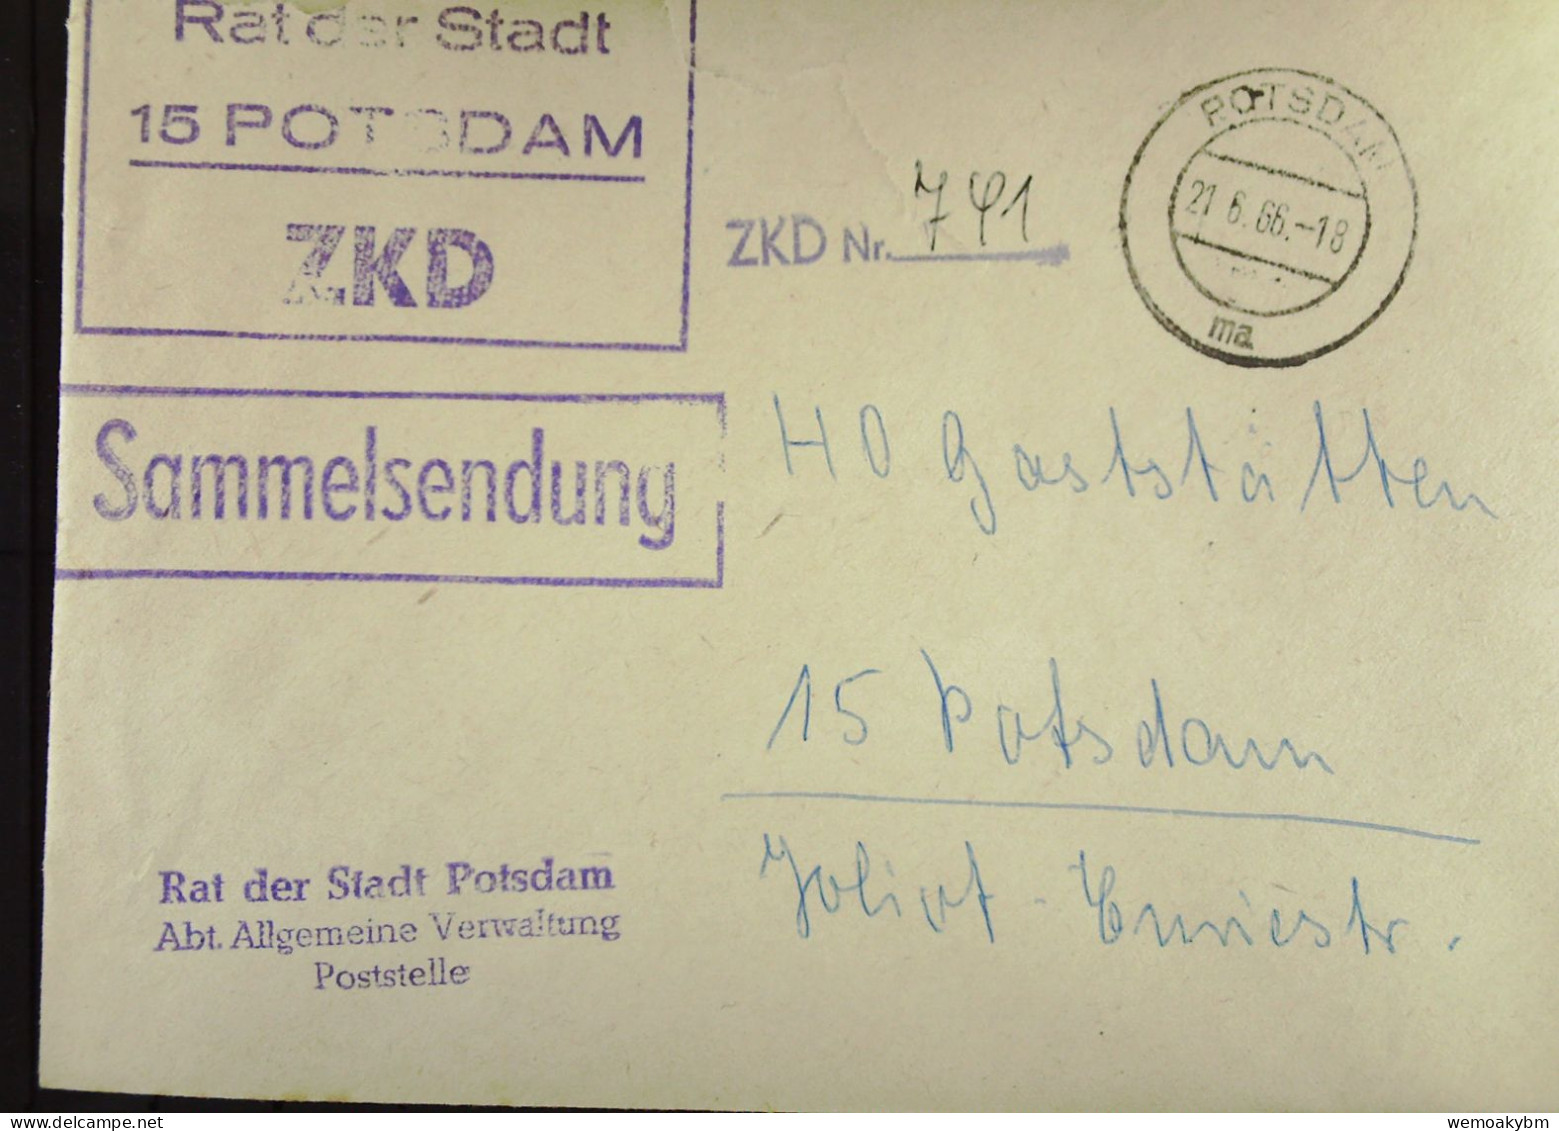 Orts-Brief Mit ZKD-Kastenst "Rat Der Stadt 15 POTSDAM" Vom 21.6.66 An HO Gaststätten Potsdam "Sammelsendung"-ZKD-Nr. 741 - Storia Postale